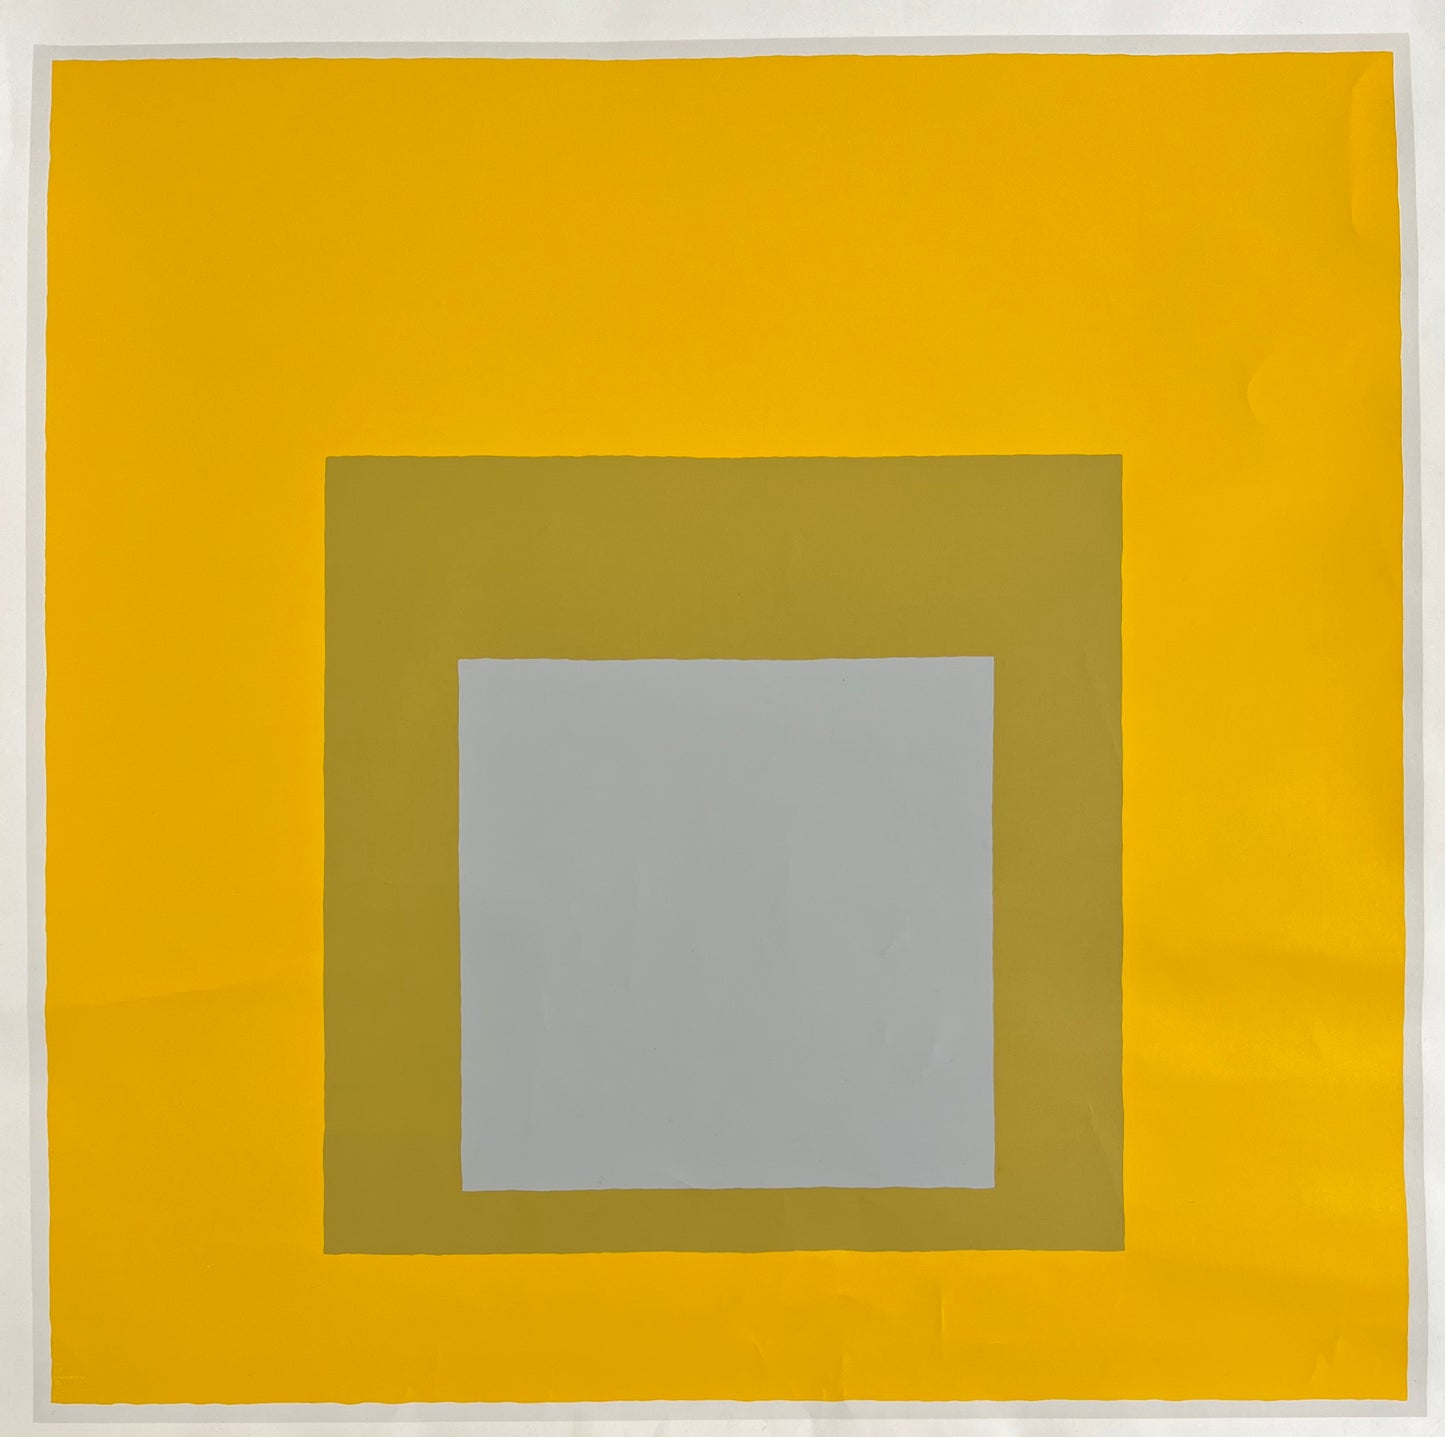 Josef Albers. "Melki Gallery", 1973